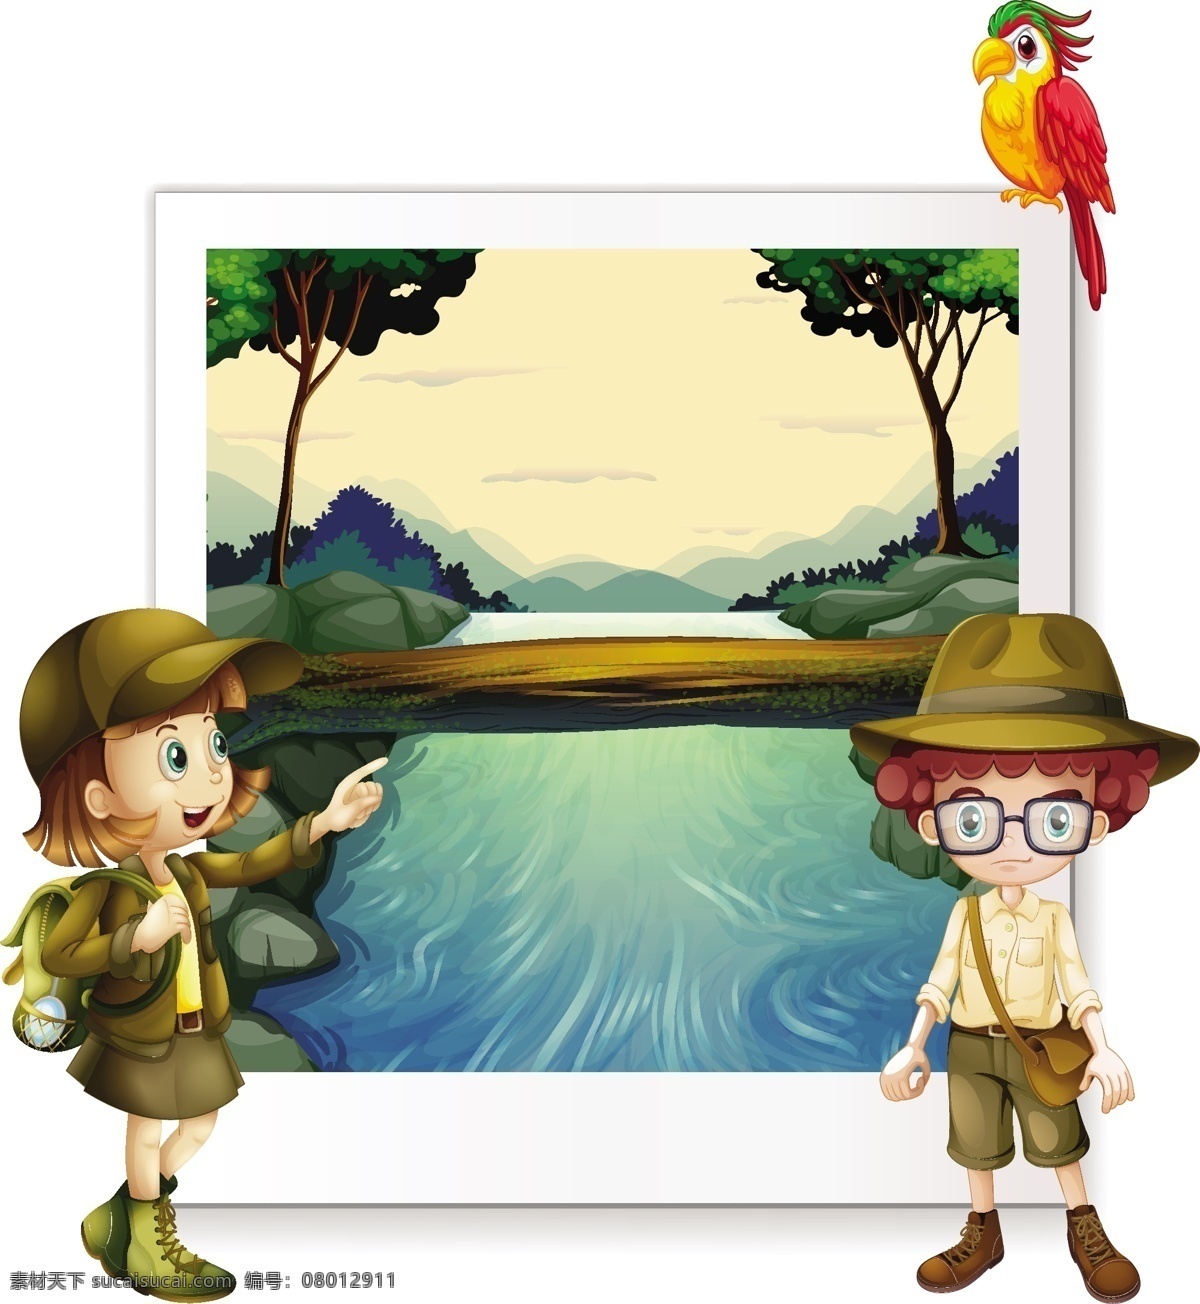 自然 快乐 童年 小时候 小学生 背景 学生 森林 艺术 图形 儿童 木背景 男孩 绘画 元素 冒险 自然背景 河流 桥梁 青年 图画 年轻人